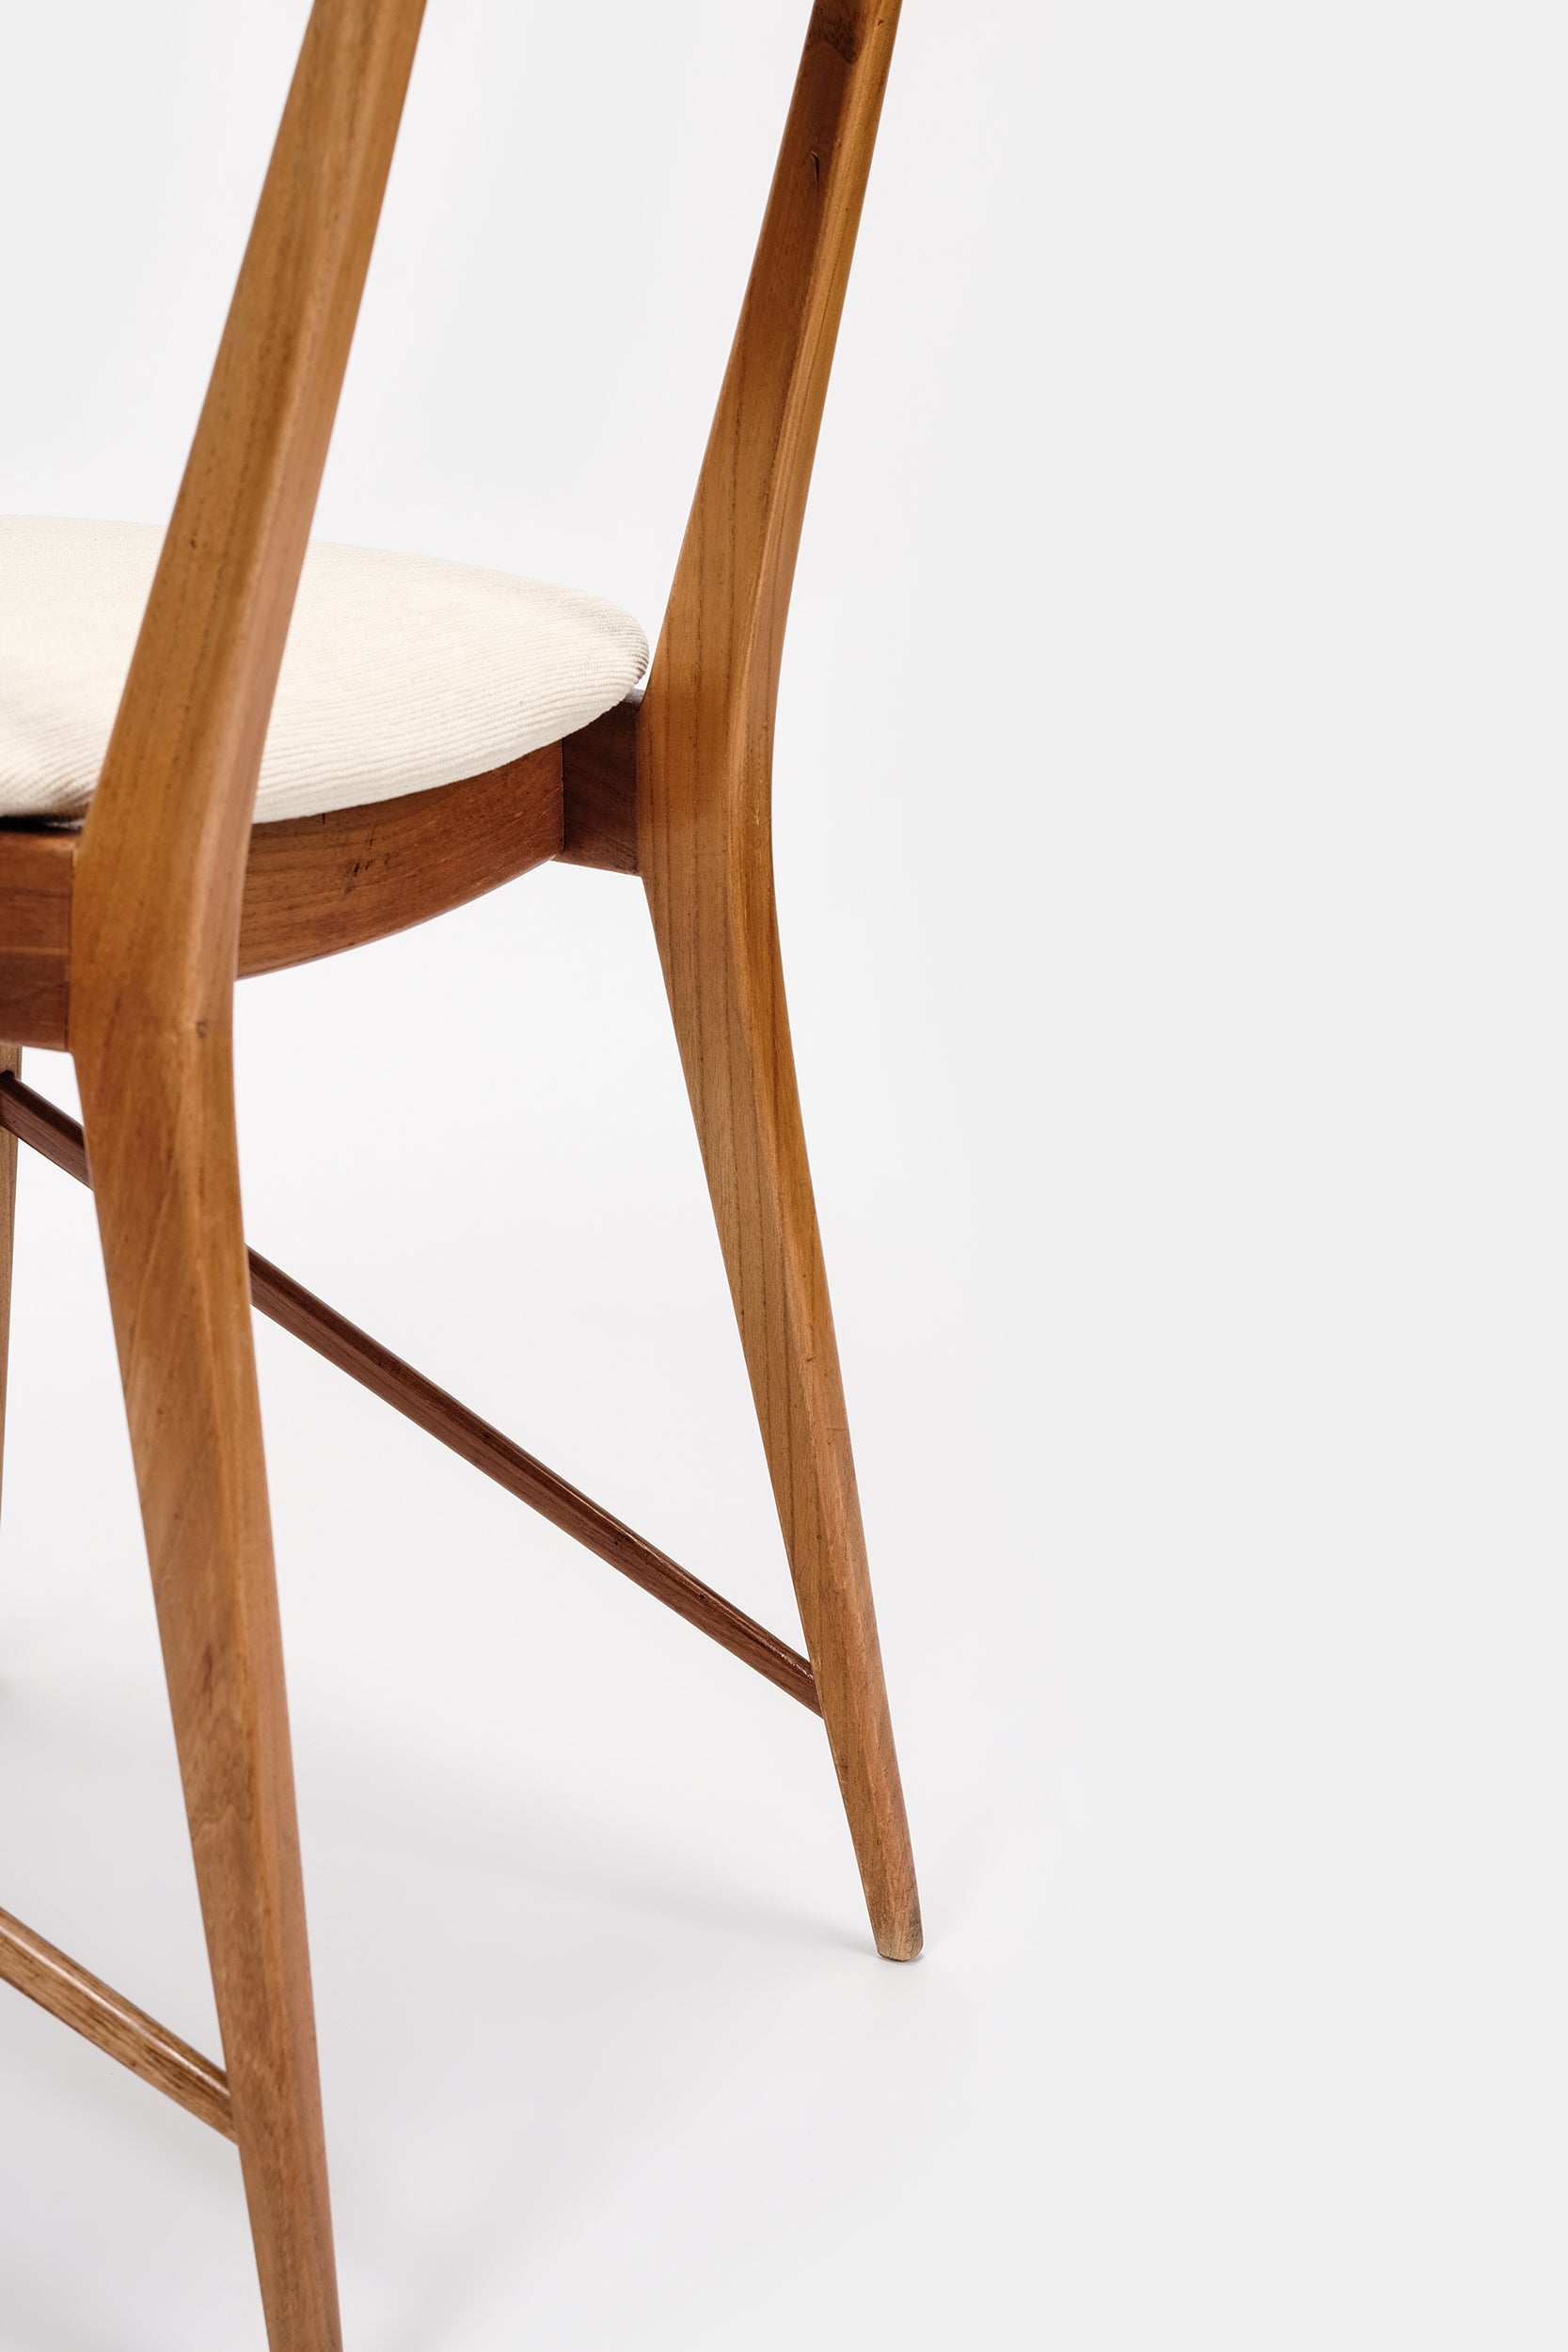 6 italienische Stühle, Mollino Style, 50er